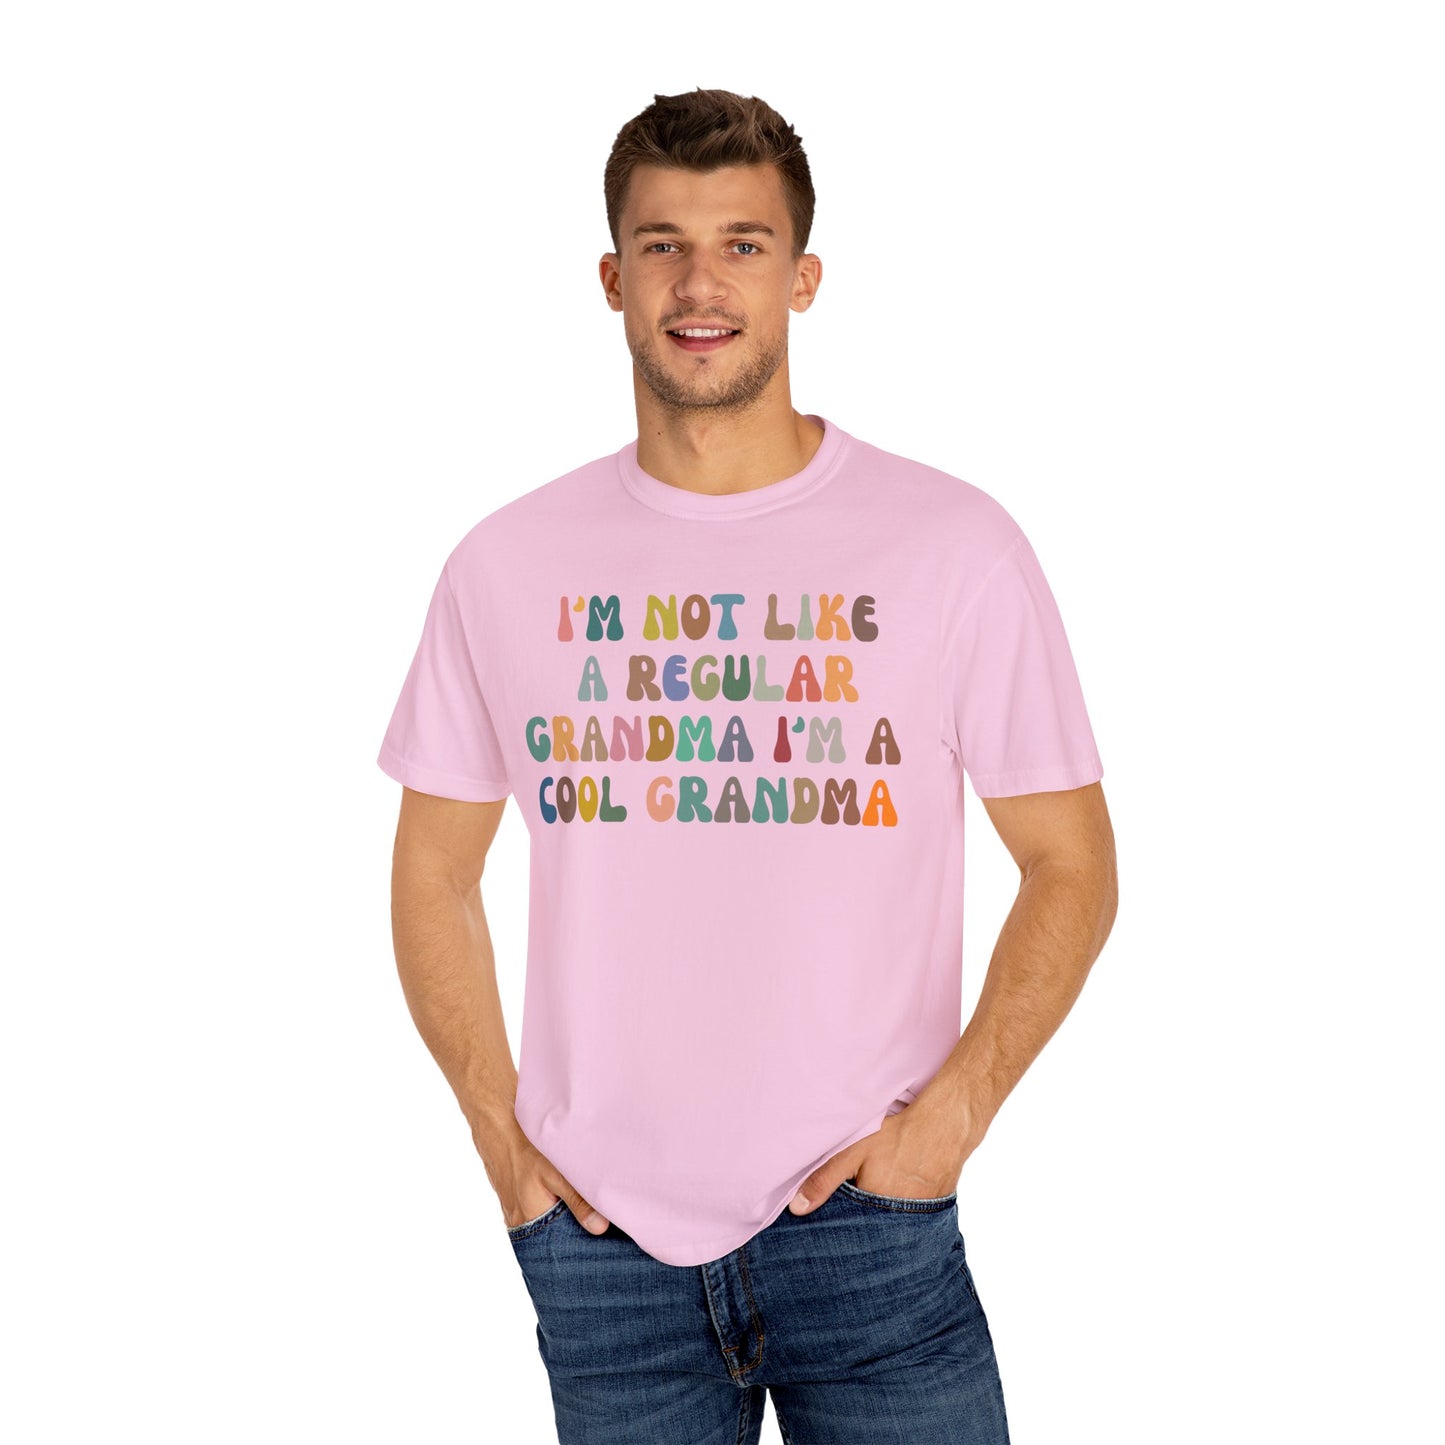 I'm Not Like A Regular Grandma I'm A Cool Grandma Shirt, Funny Grandma Shirt, Cool Grandma Shirt, Best Grandma Shirt Gift for Grandma, CC975